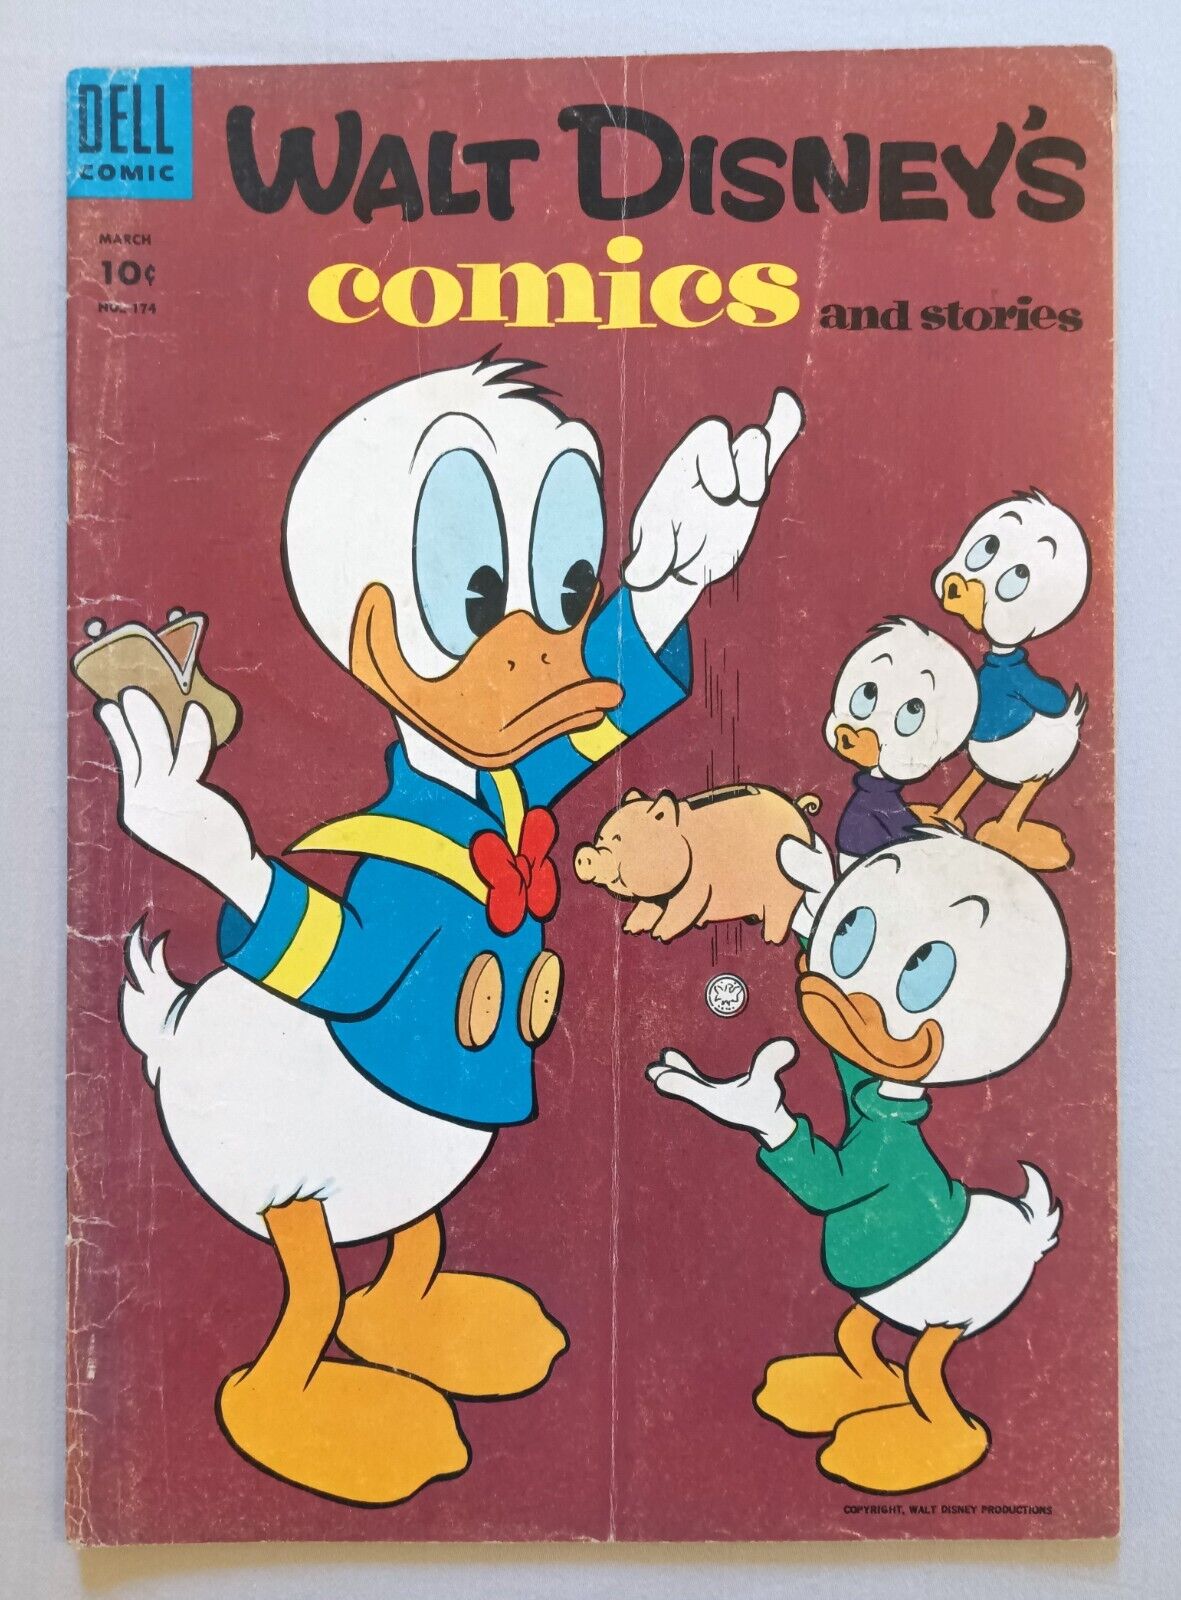 WALT DISNEY'S COMICS AND STORIES #174, DELL COMICS, GOLDEN AGE, GOOD+, 1955